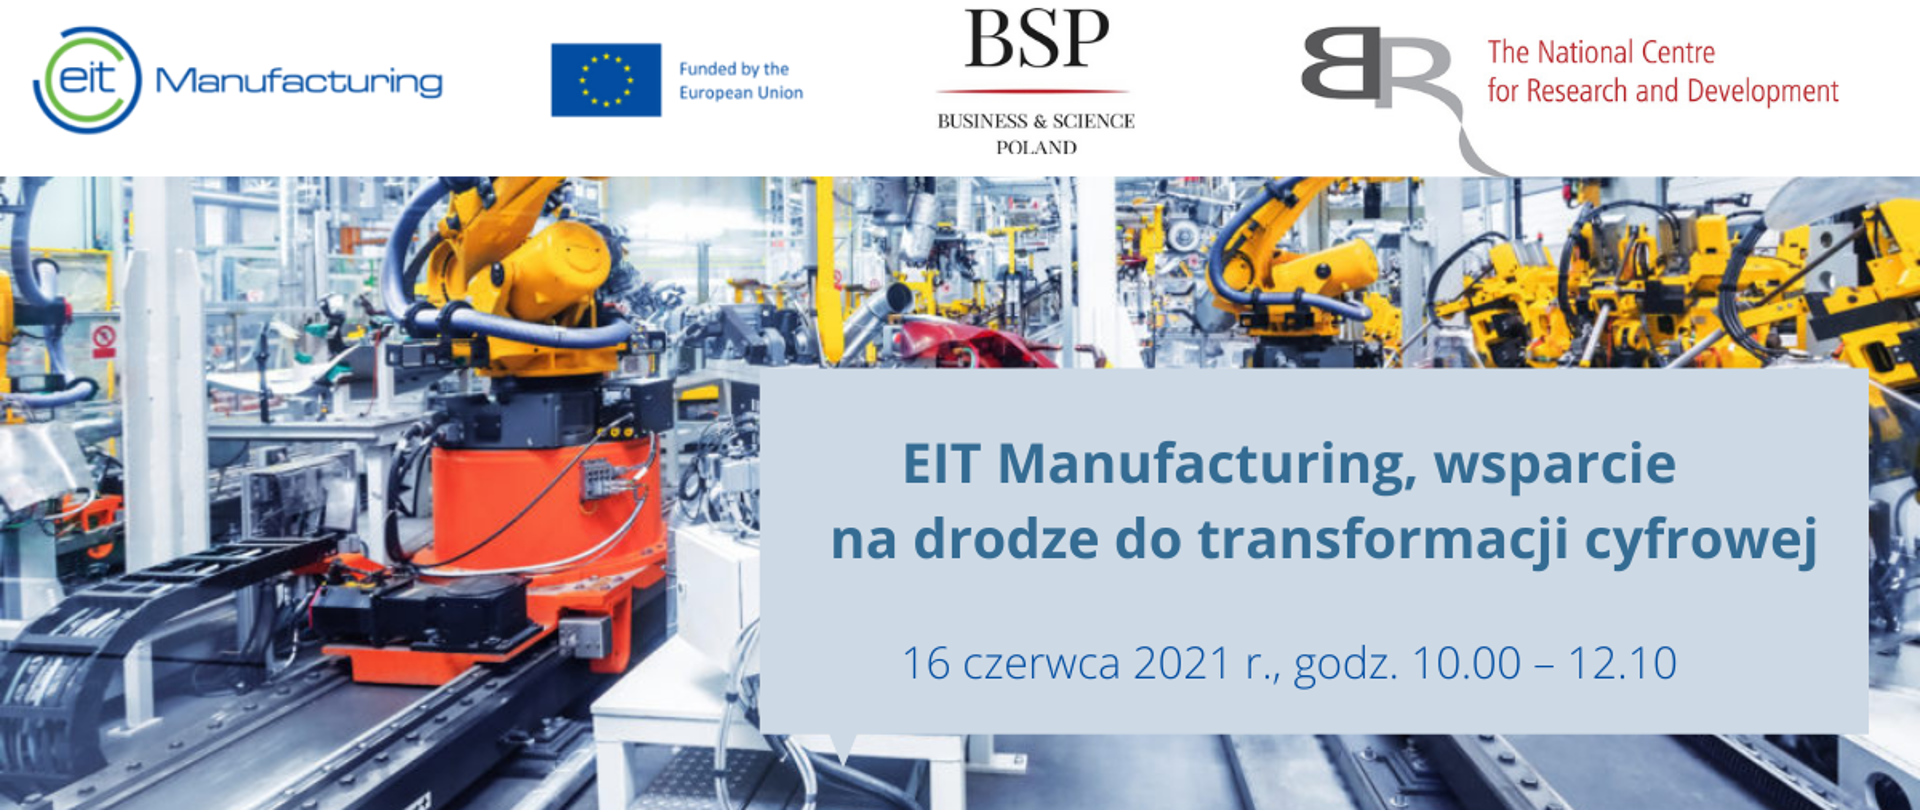 EIT Manufacturing, wsparcie na drodze do transformacji cyfrowej